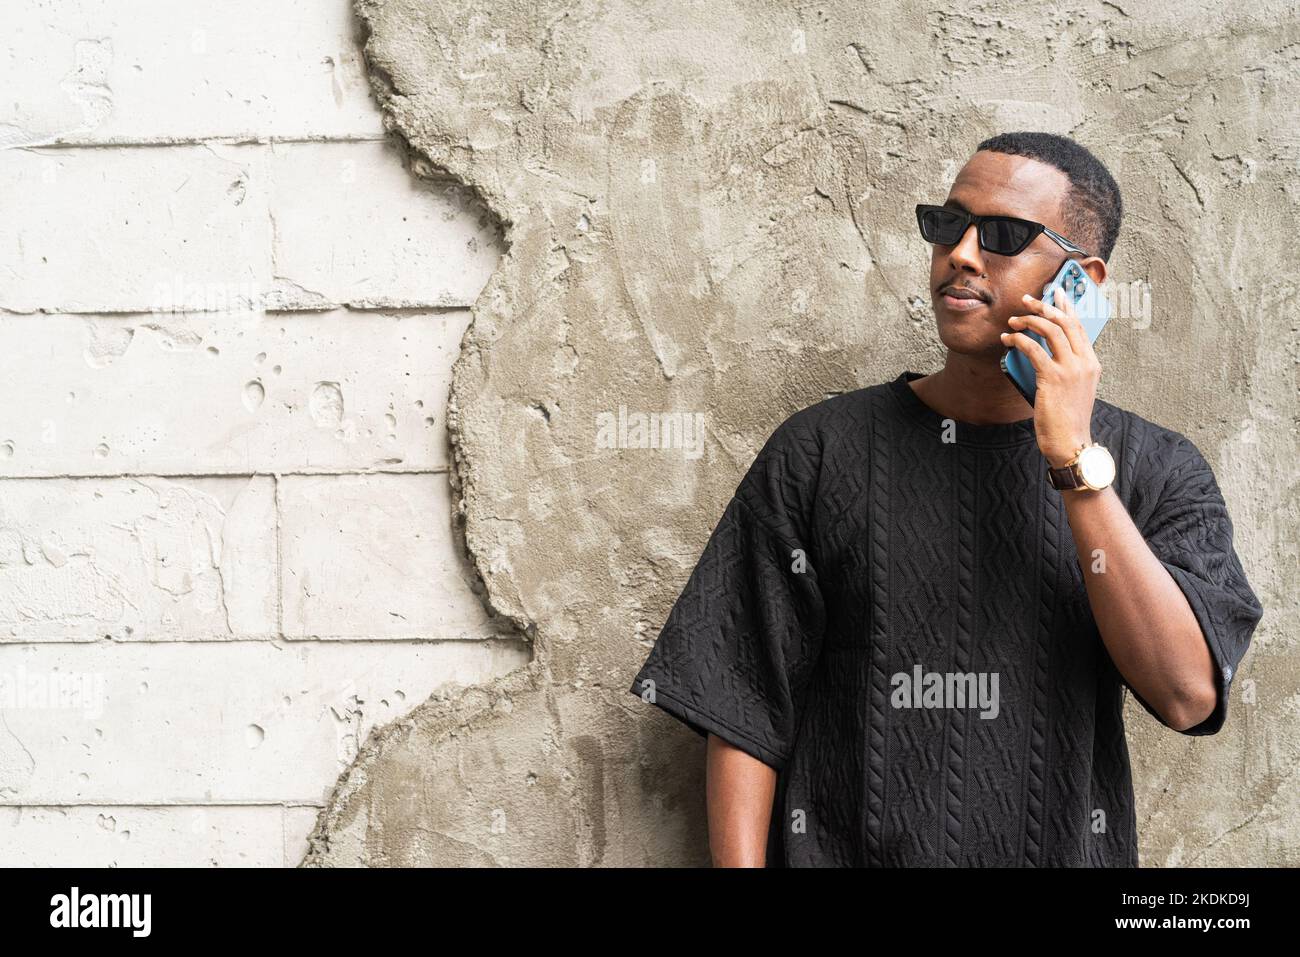 Bel giovane uomo africano che usa il telefono cellulare all'aperto Foto Stock